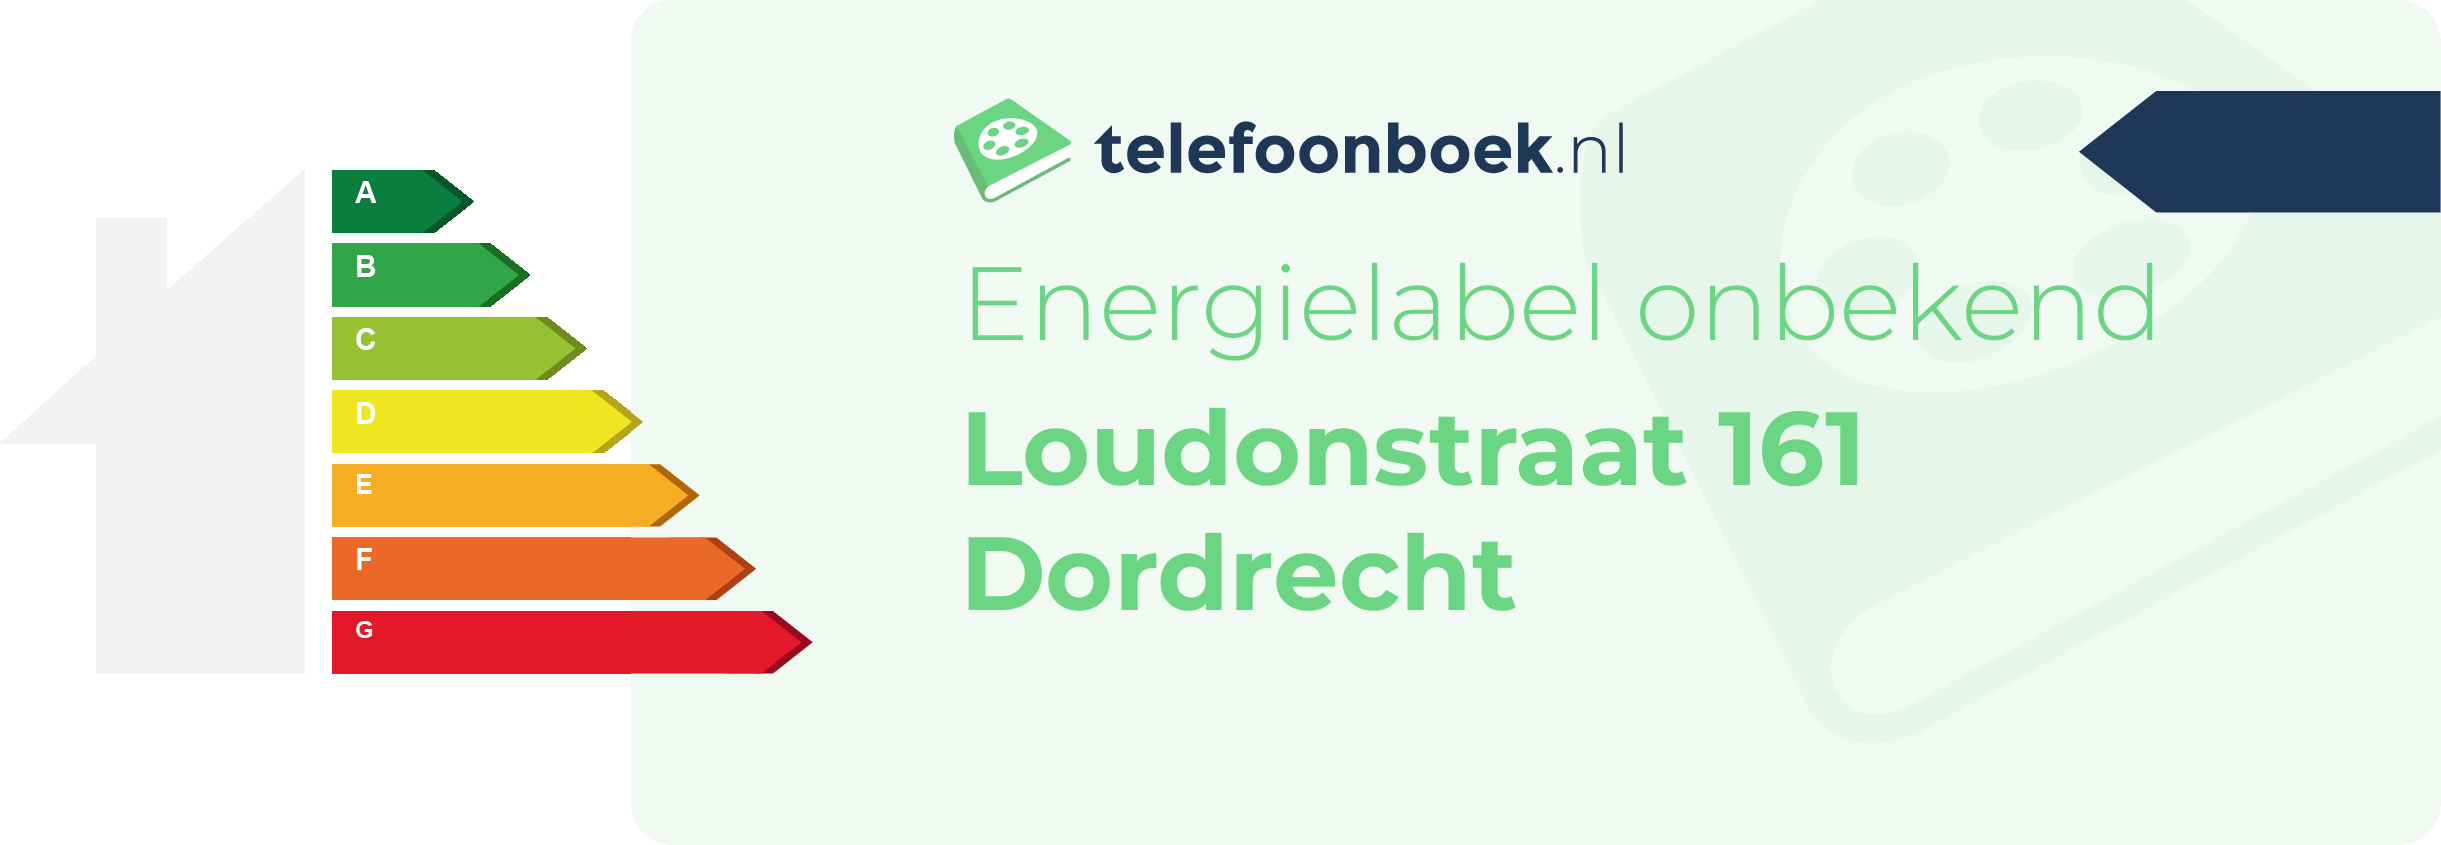 Energielabel Loudonstraat 161 Dordrecht